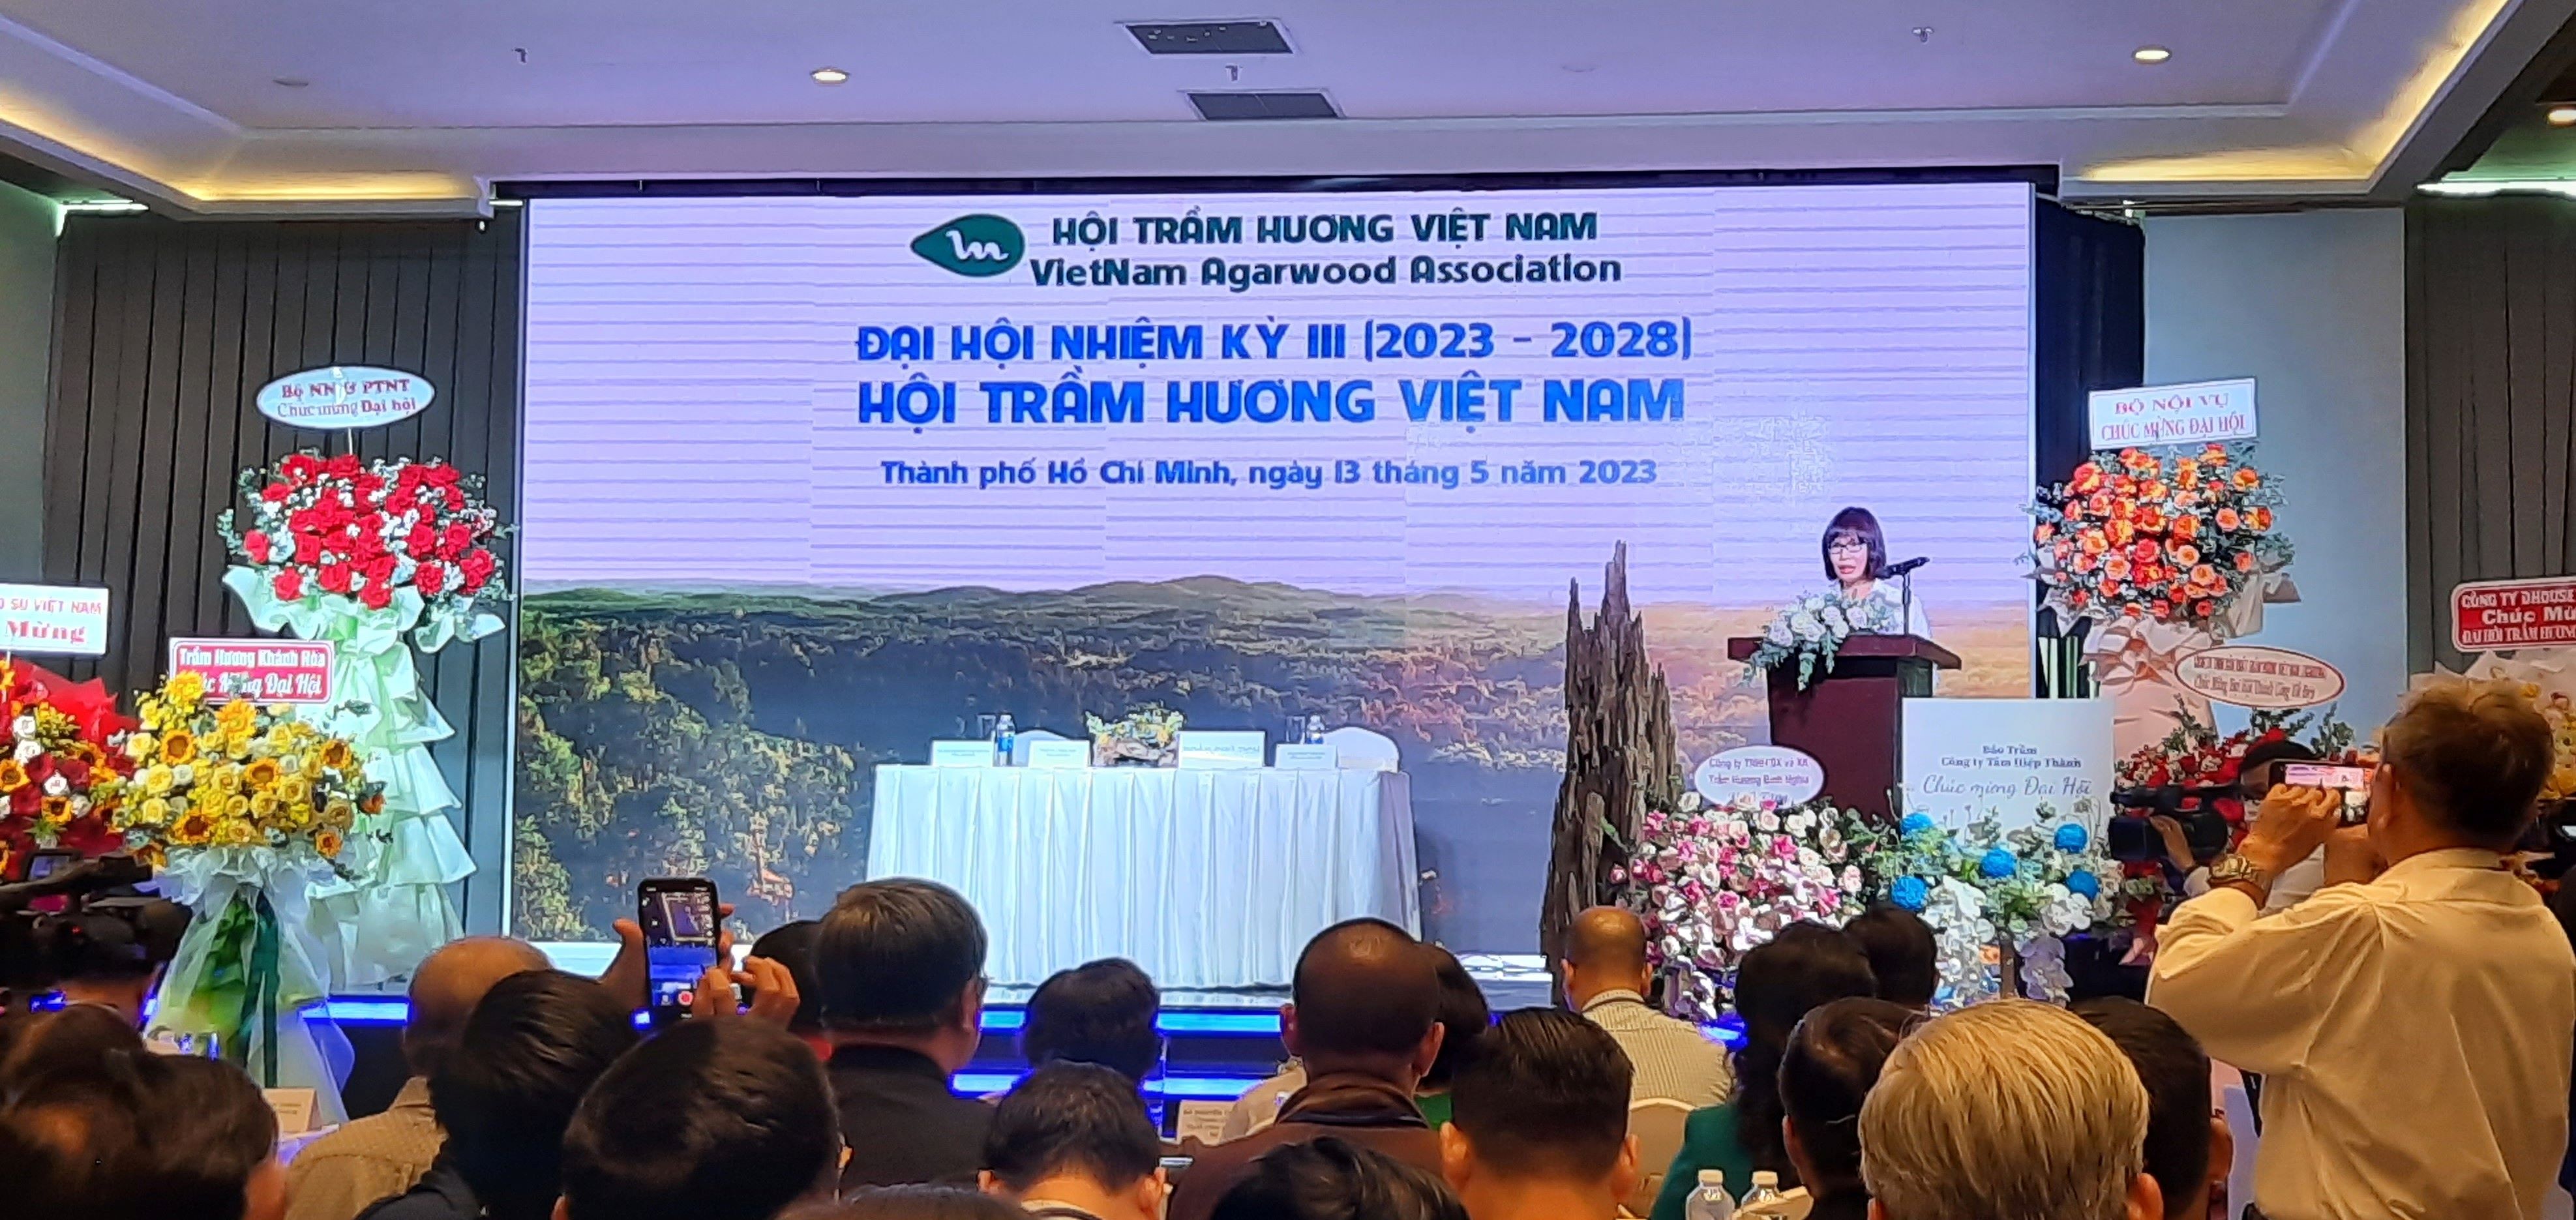 Đại hội lần III nhiệm kỳ 2023 - 2028 Hội Trầm hương Việt Nam: Nỗ lực nâng cao hiệu quả, sức cạnh tranh cho loài cây quý